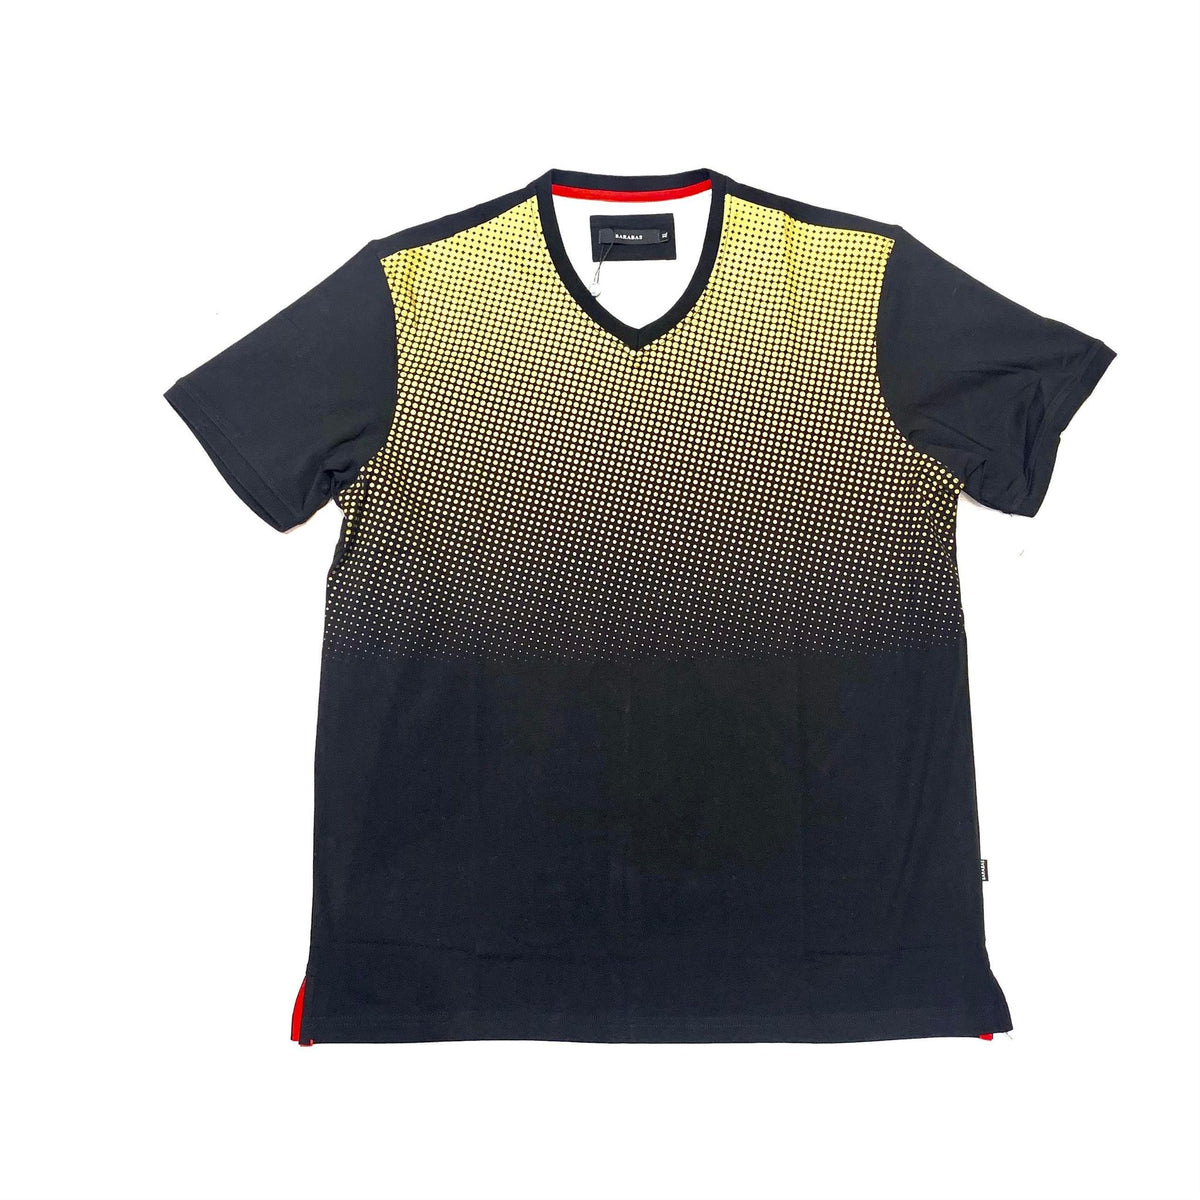 Barabas Men's Black Gold Polka Dot Short Sleeve T-Shirt - Dudes Boutique